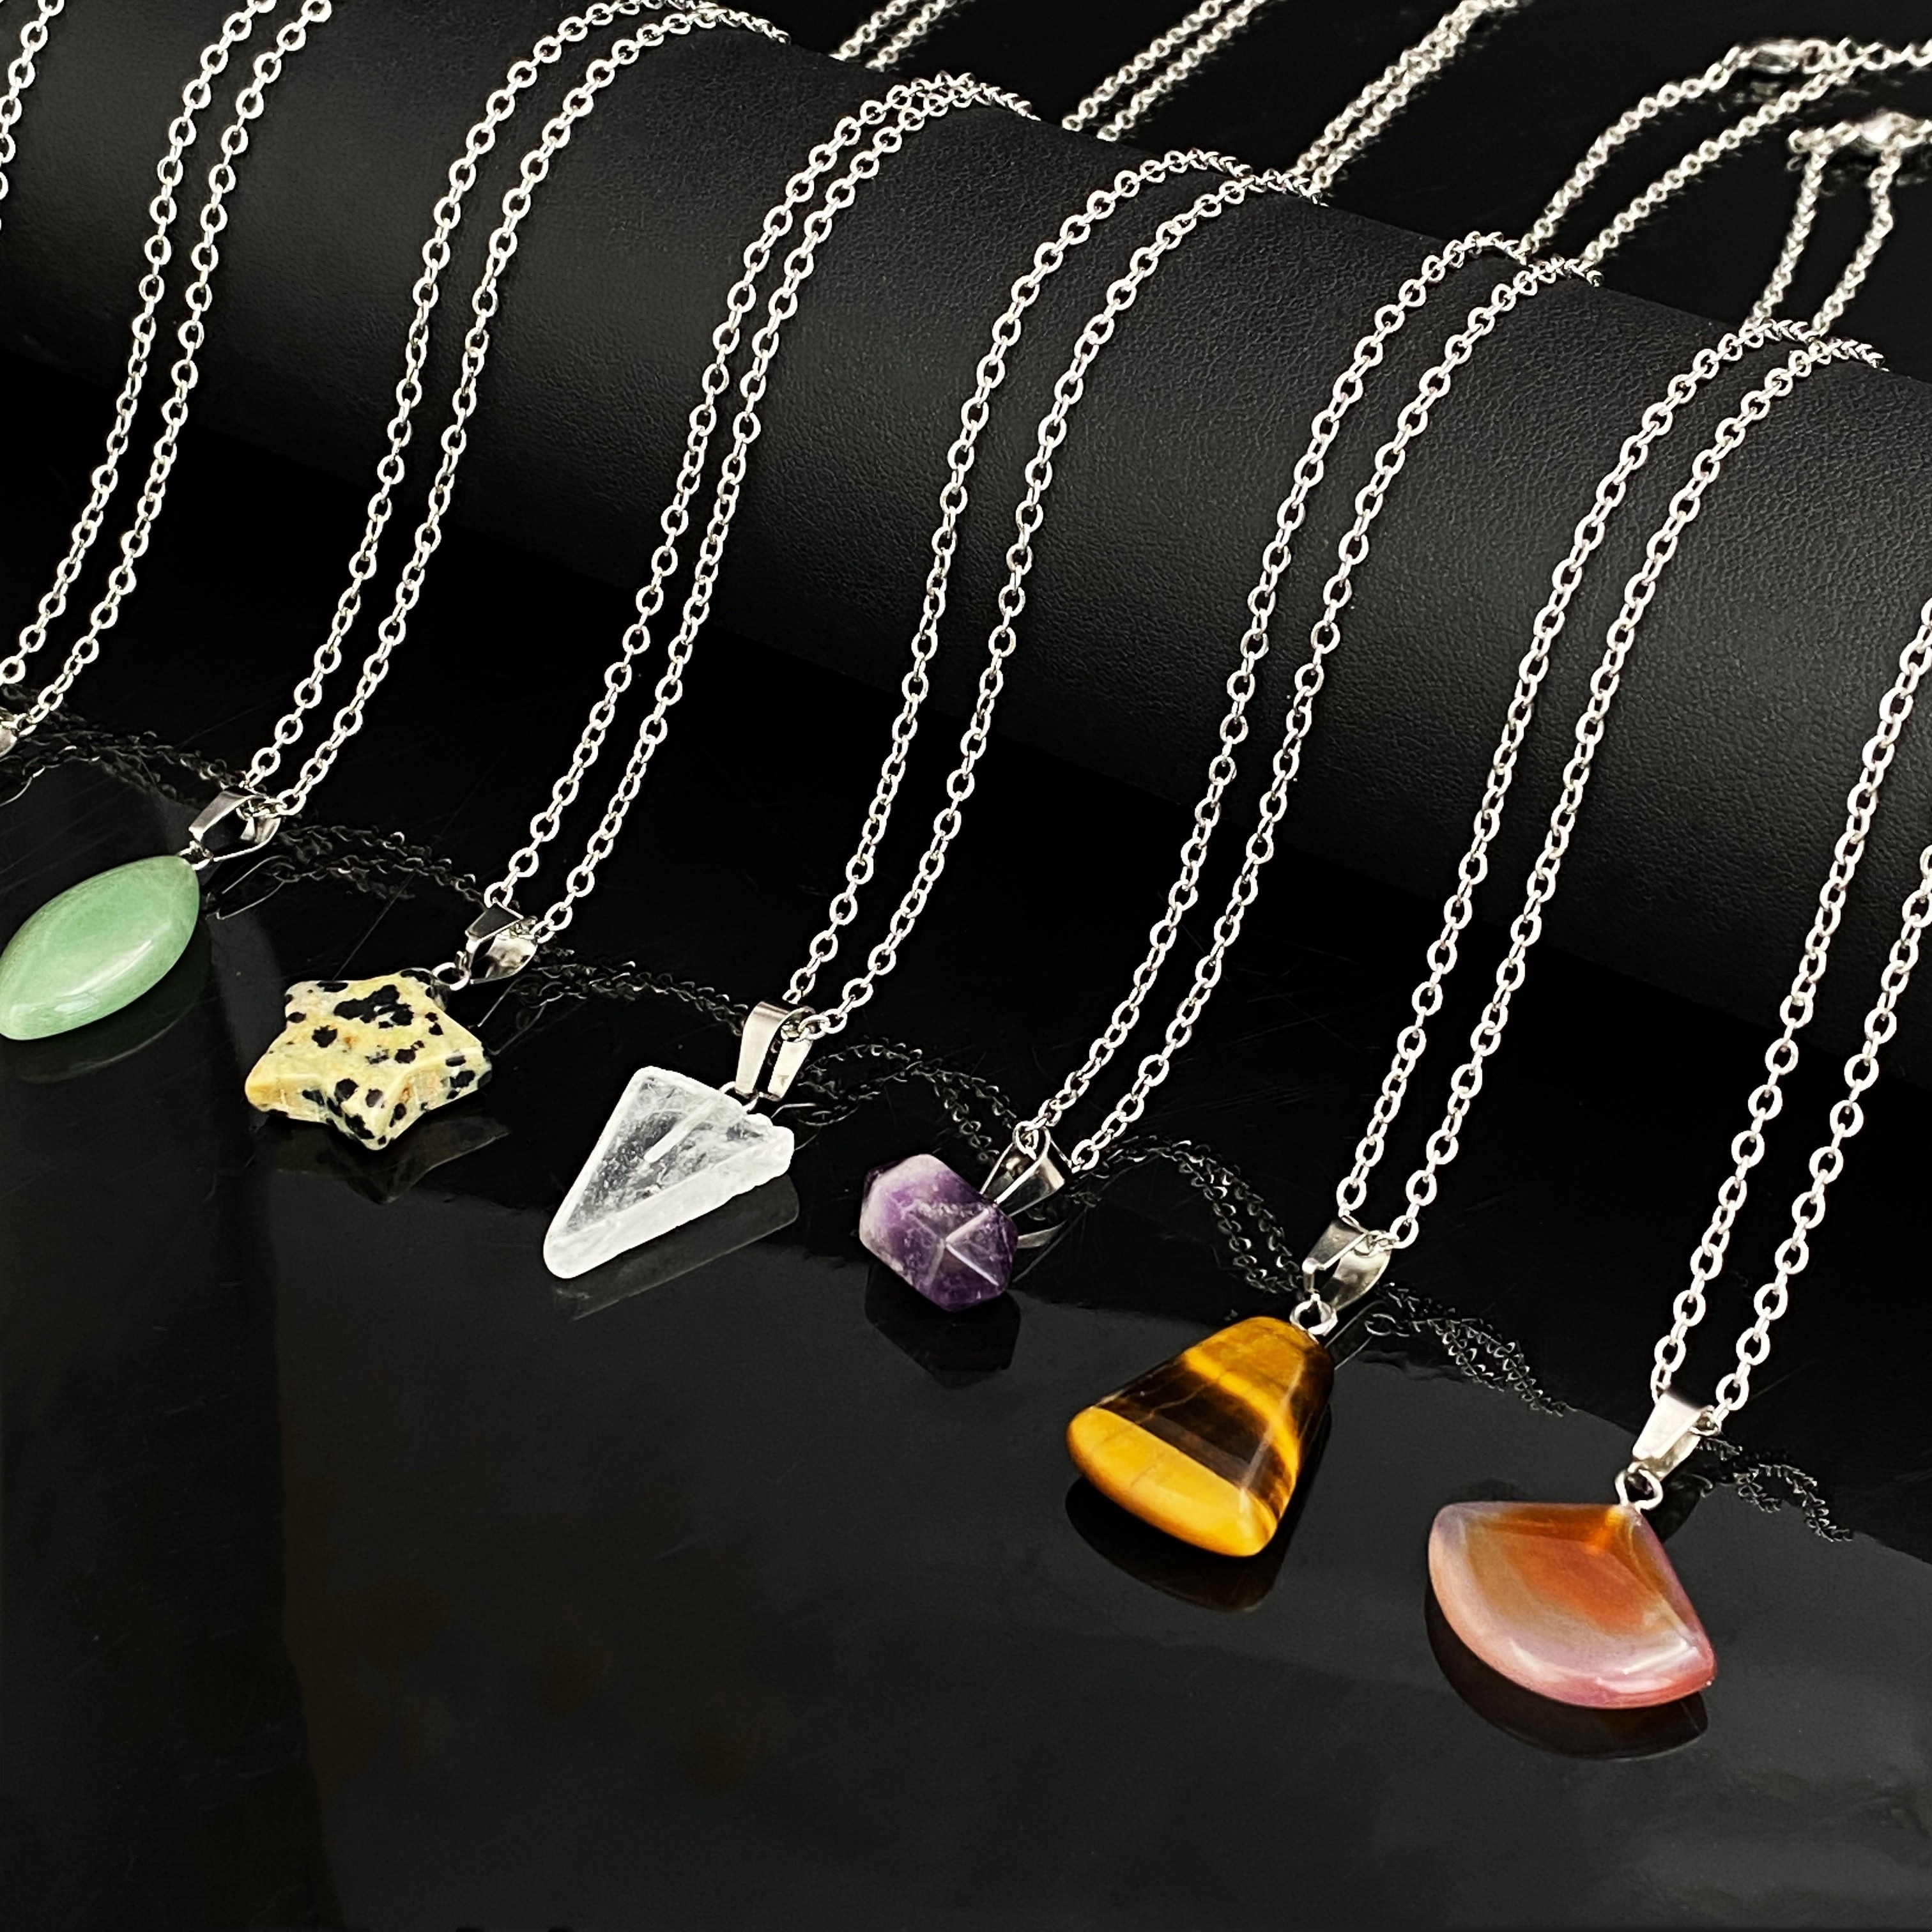 10pcs/set Random Color Natural Stone Pendants Charms for DIY Women